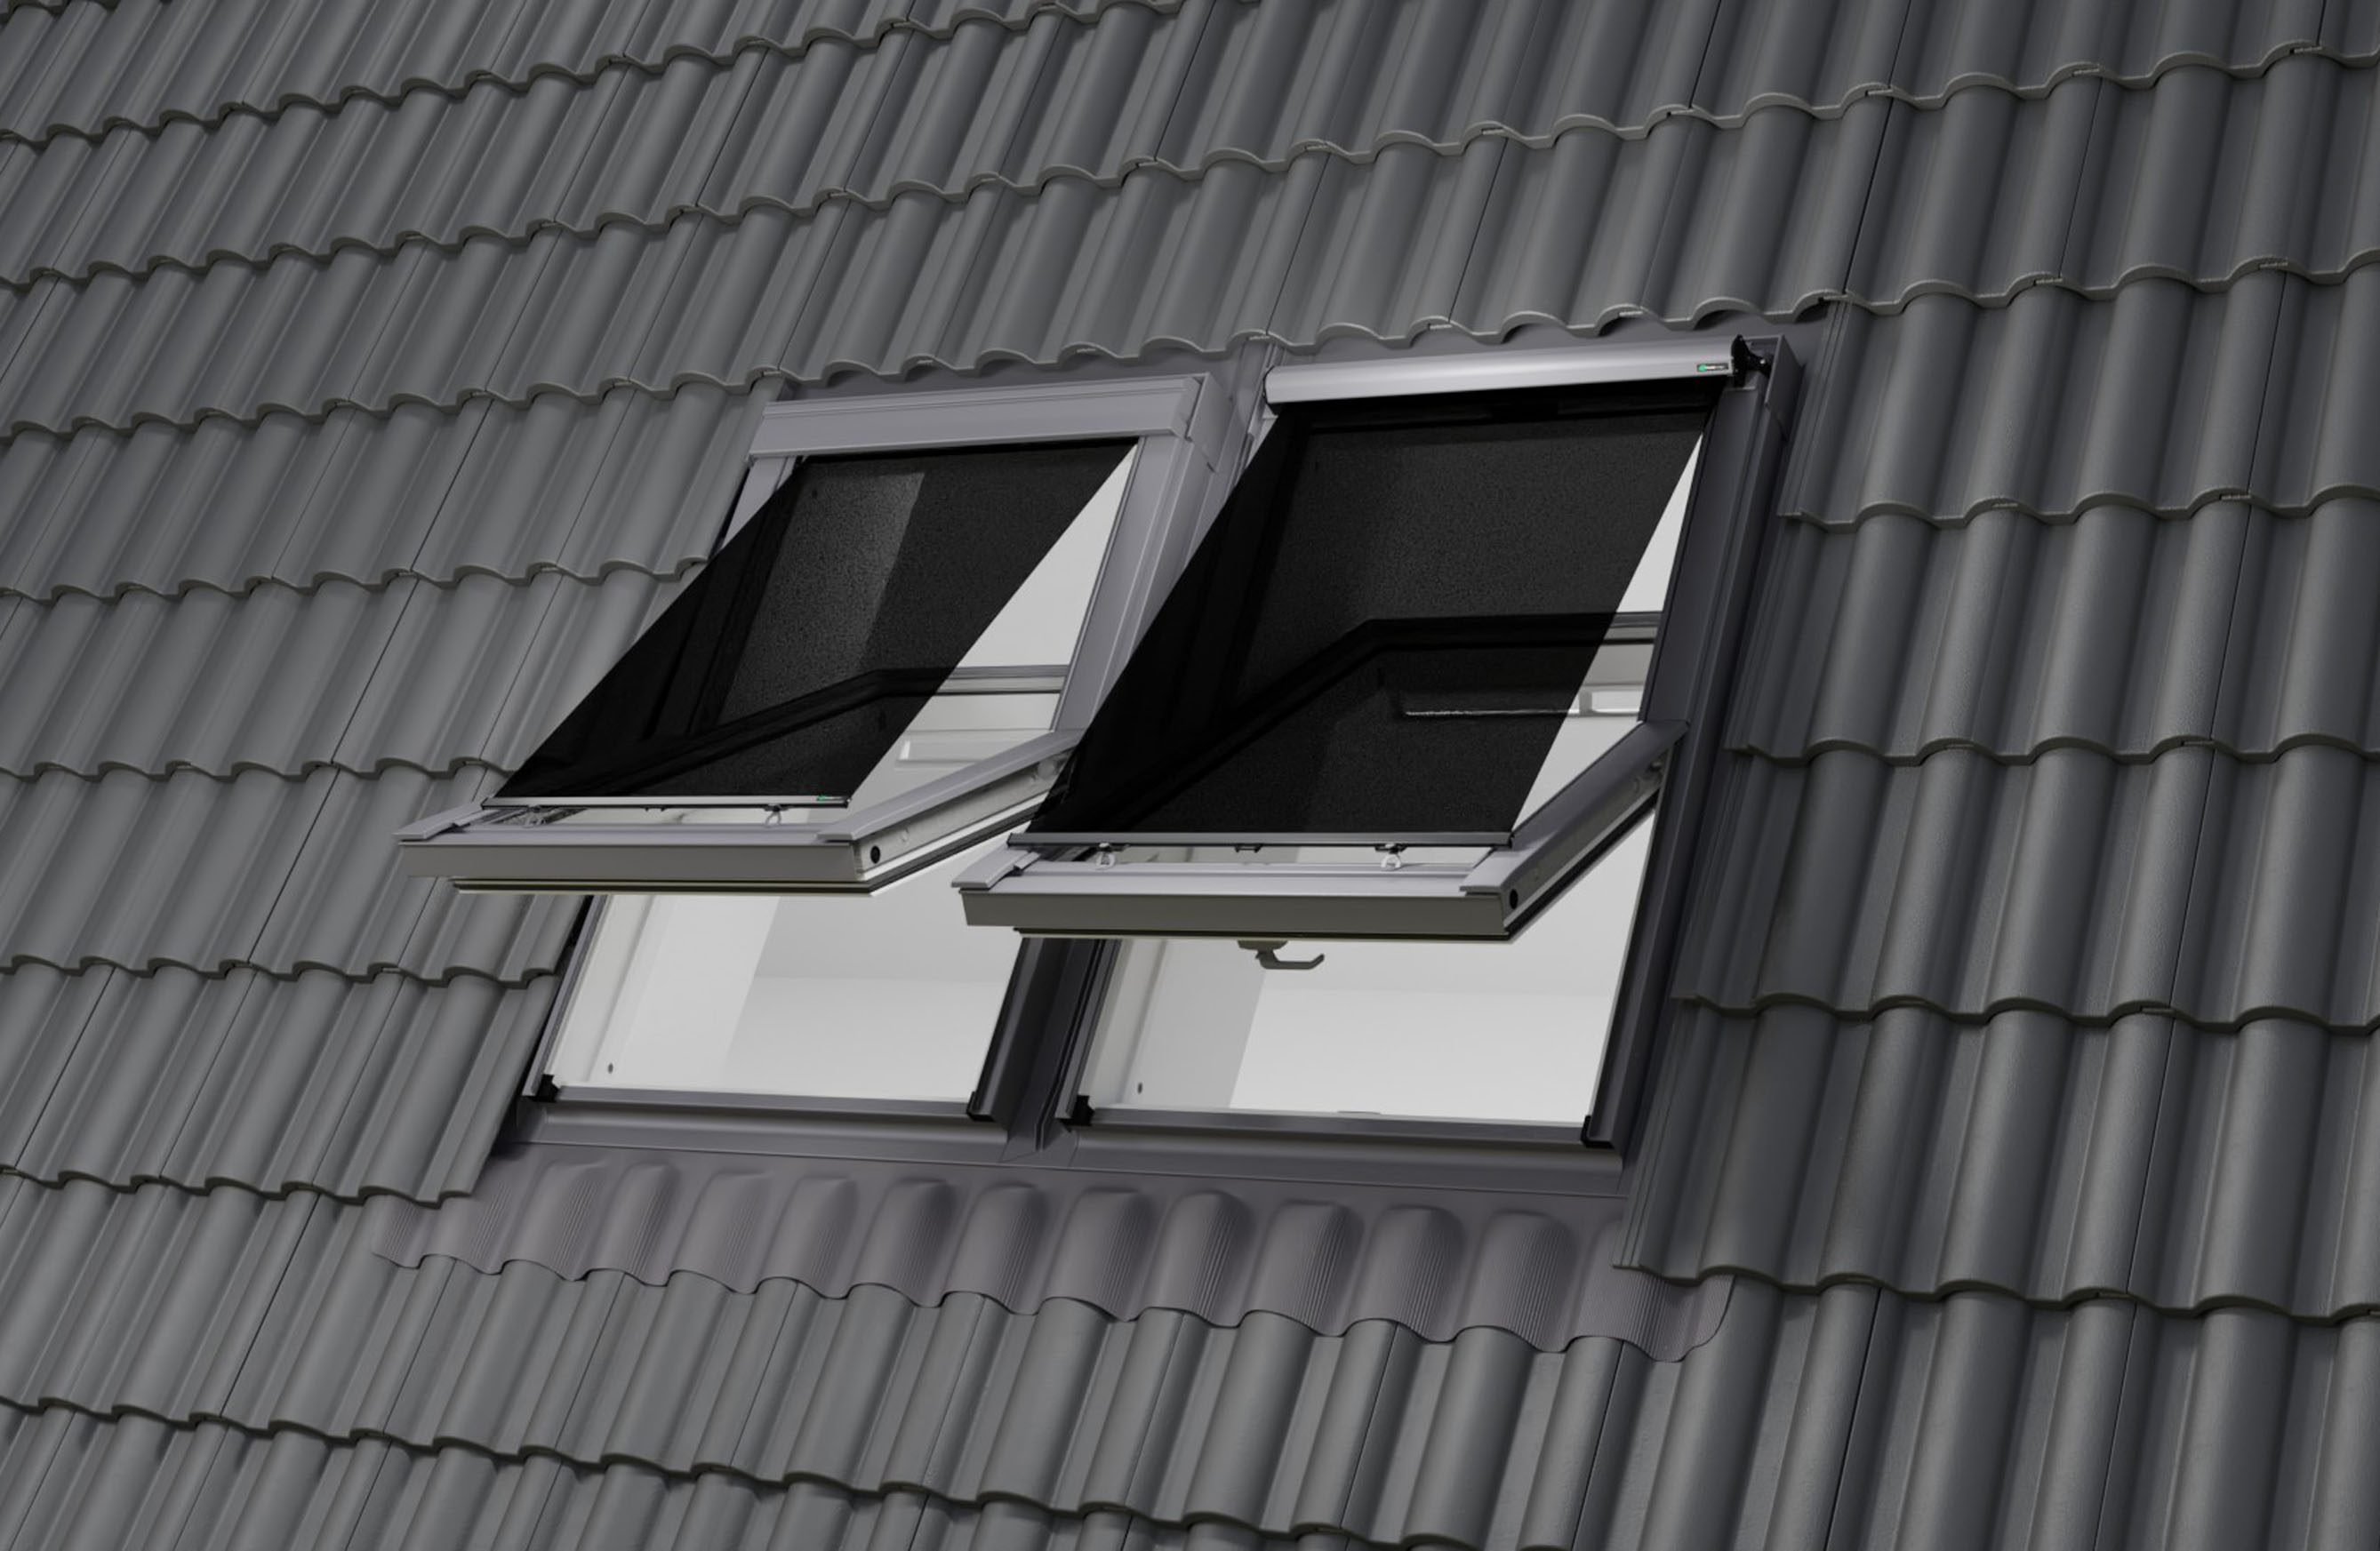 Hitzeschutz-Markise für Dachfenster